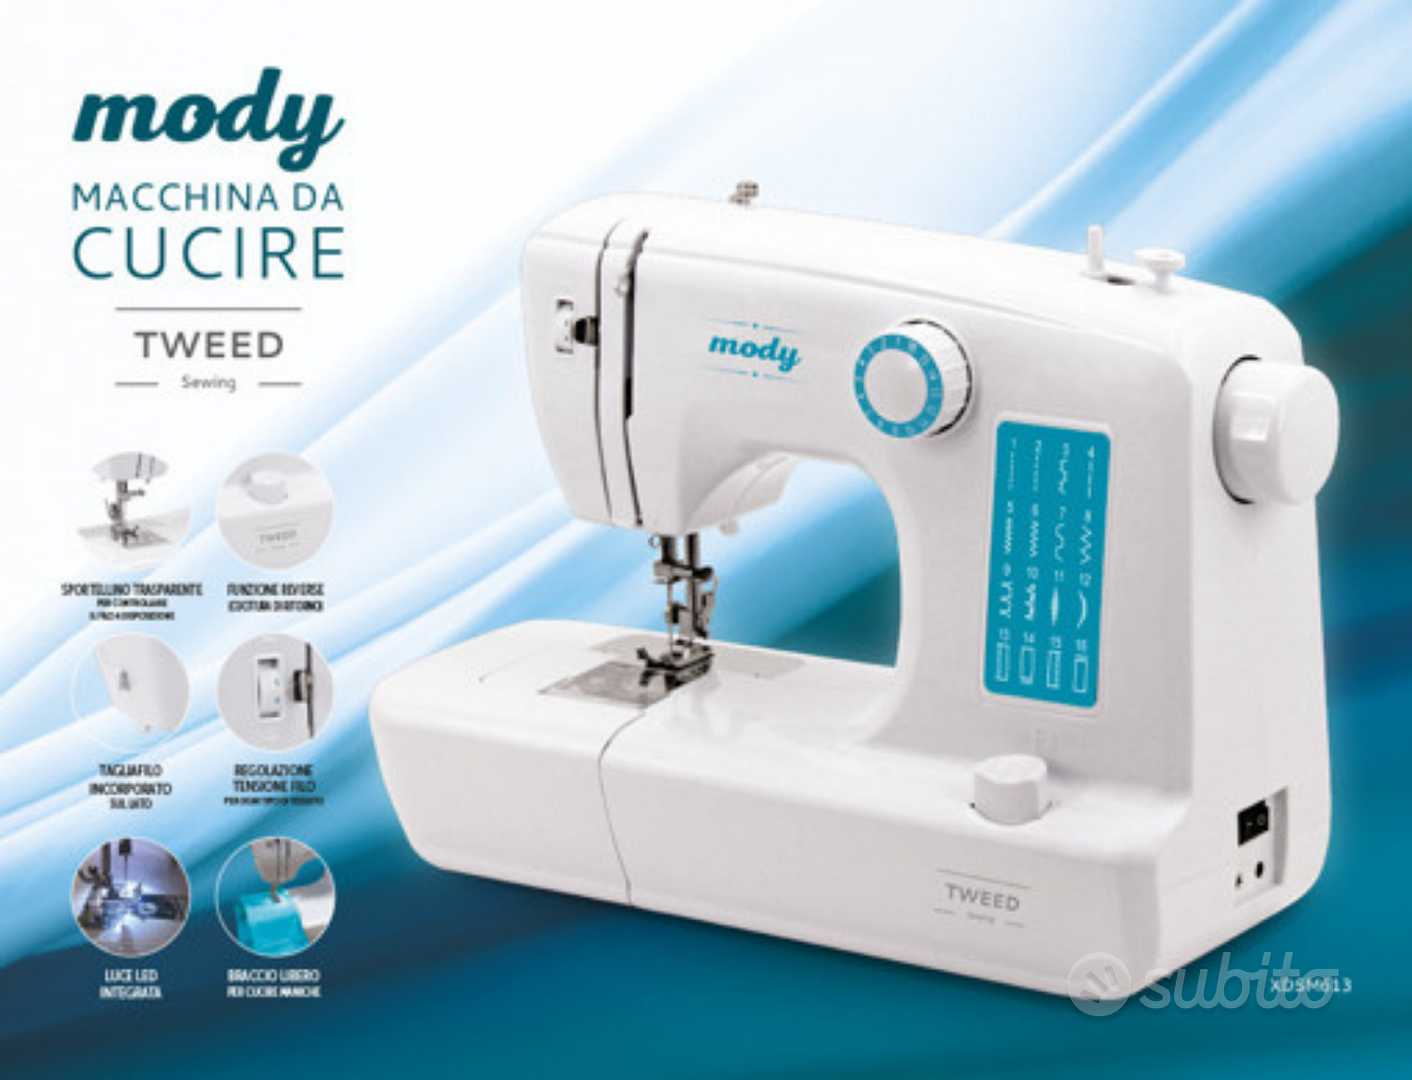 TWEED Atelier Macchina da cucire automatica 42 operazioni braccio libero  XDSM707, Macchine da cucire in Offerta su Stay On